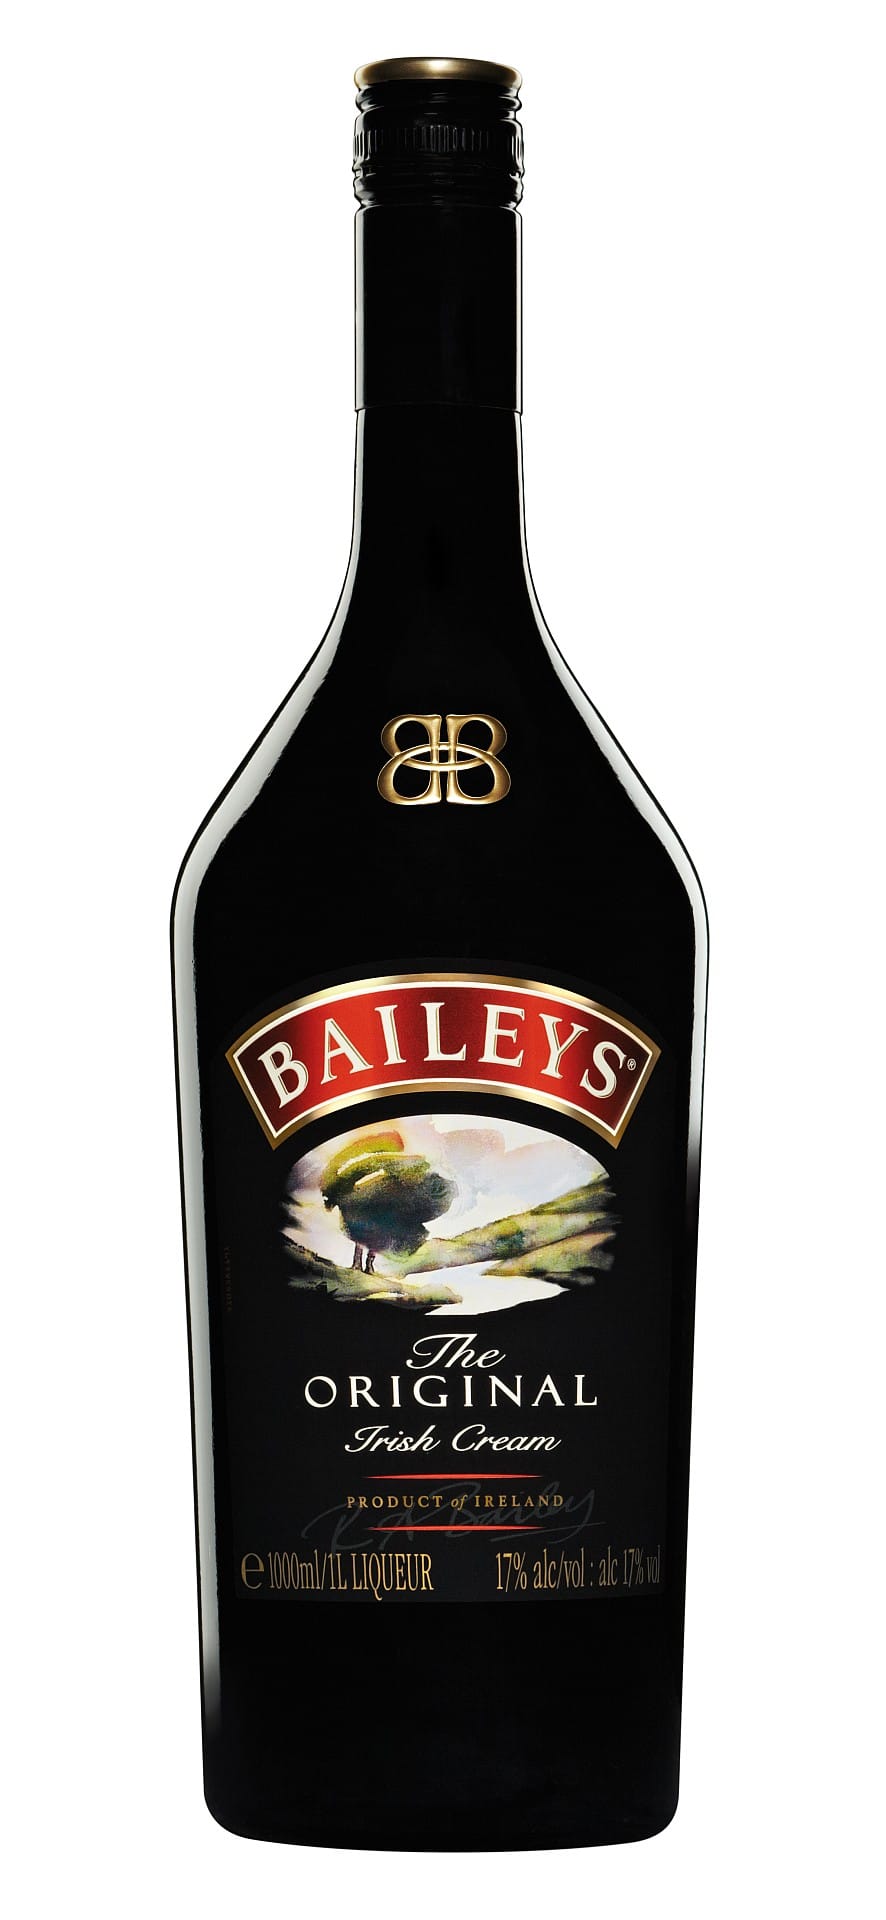 Diageo aus London ist mit rund 40 Marken der größte Spirituosenproduzent in Zentraleuropa. Mit Marken wie Bailey's ist der Konzern auch in deutschen Discountern vertreten. Produkt-übergreifende Rahmenverträge sorgen für große Mengen und günstige Preise.